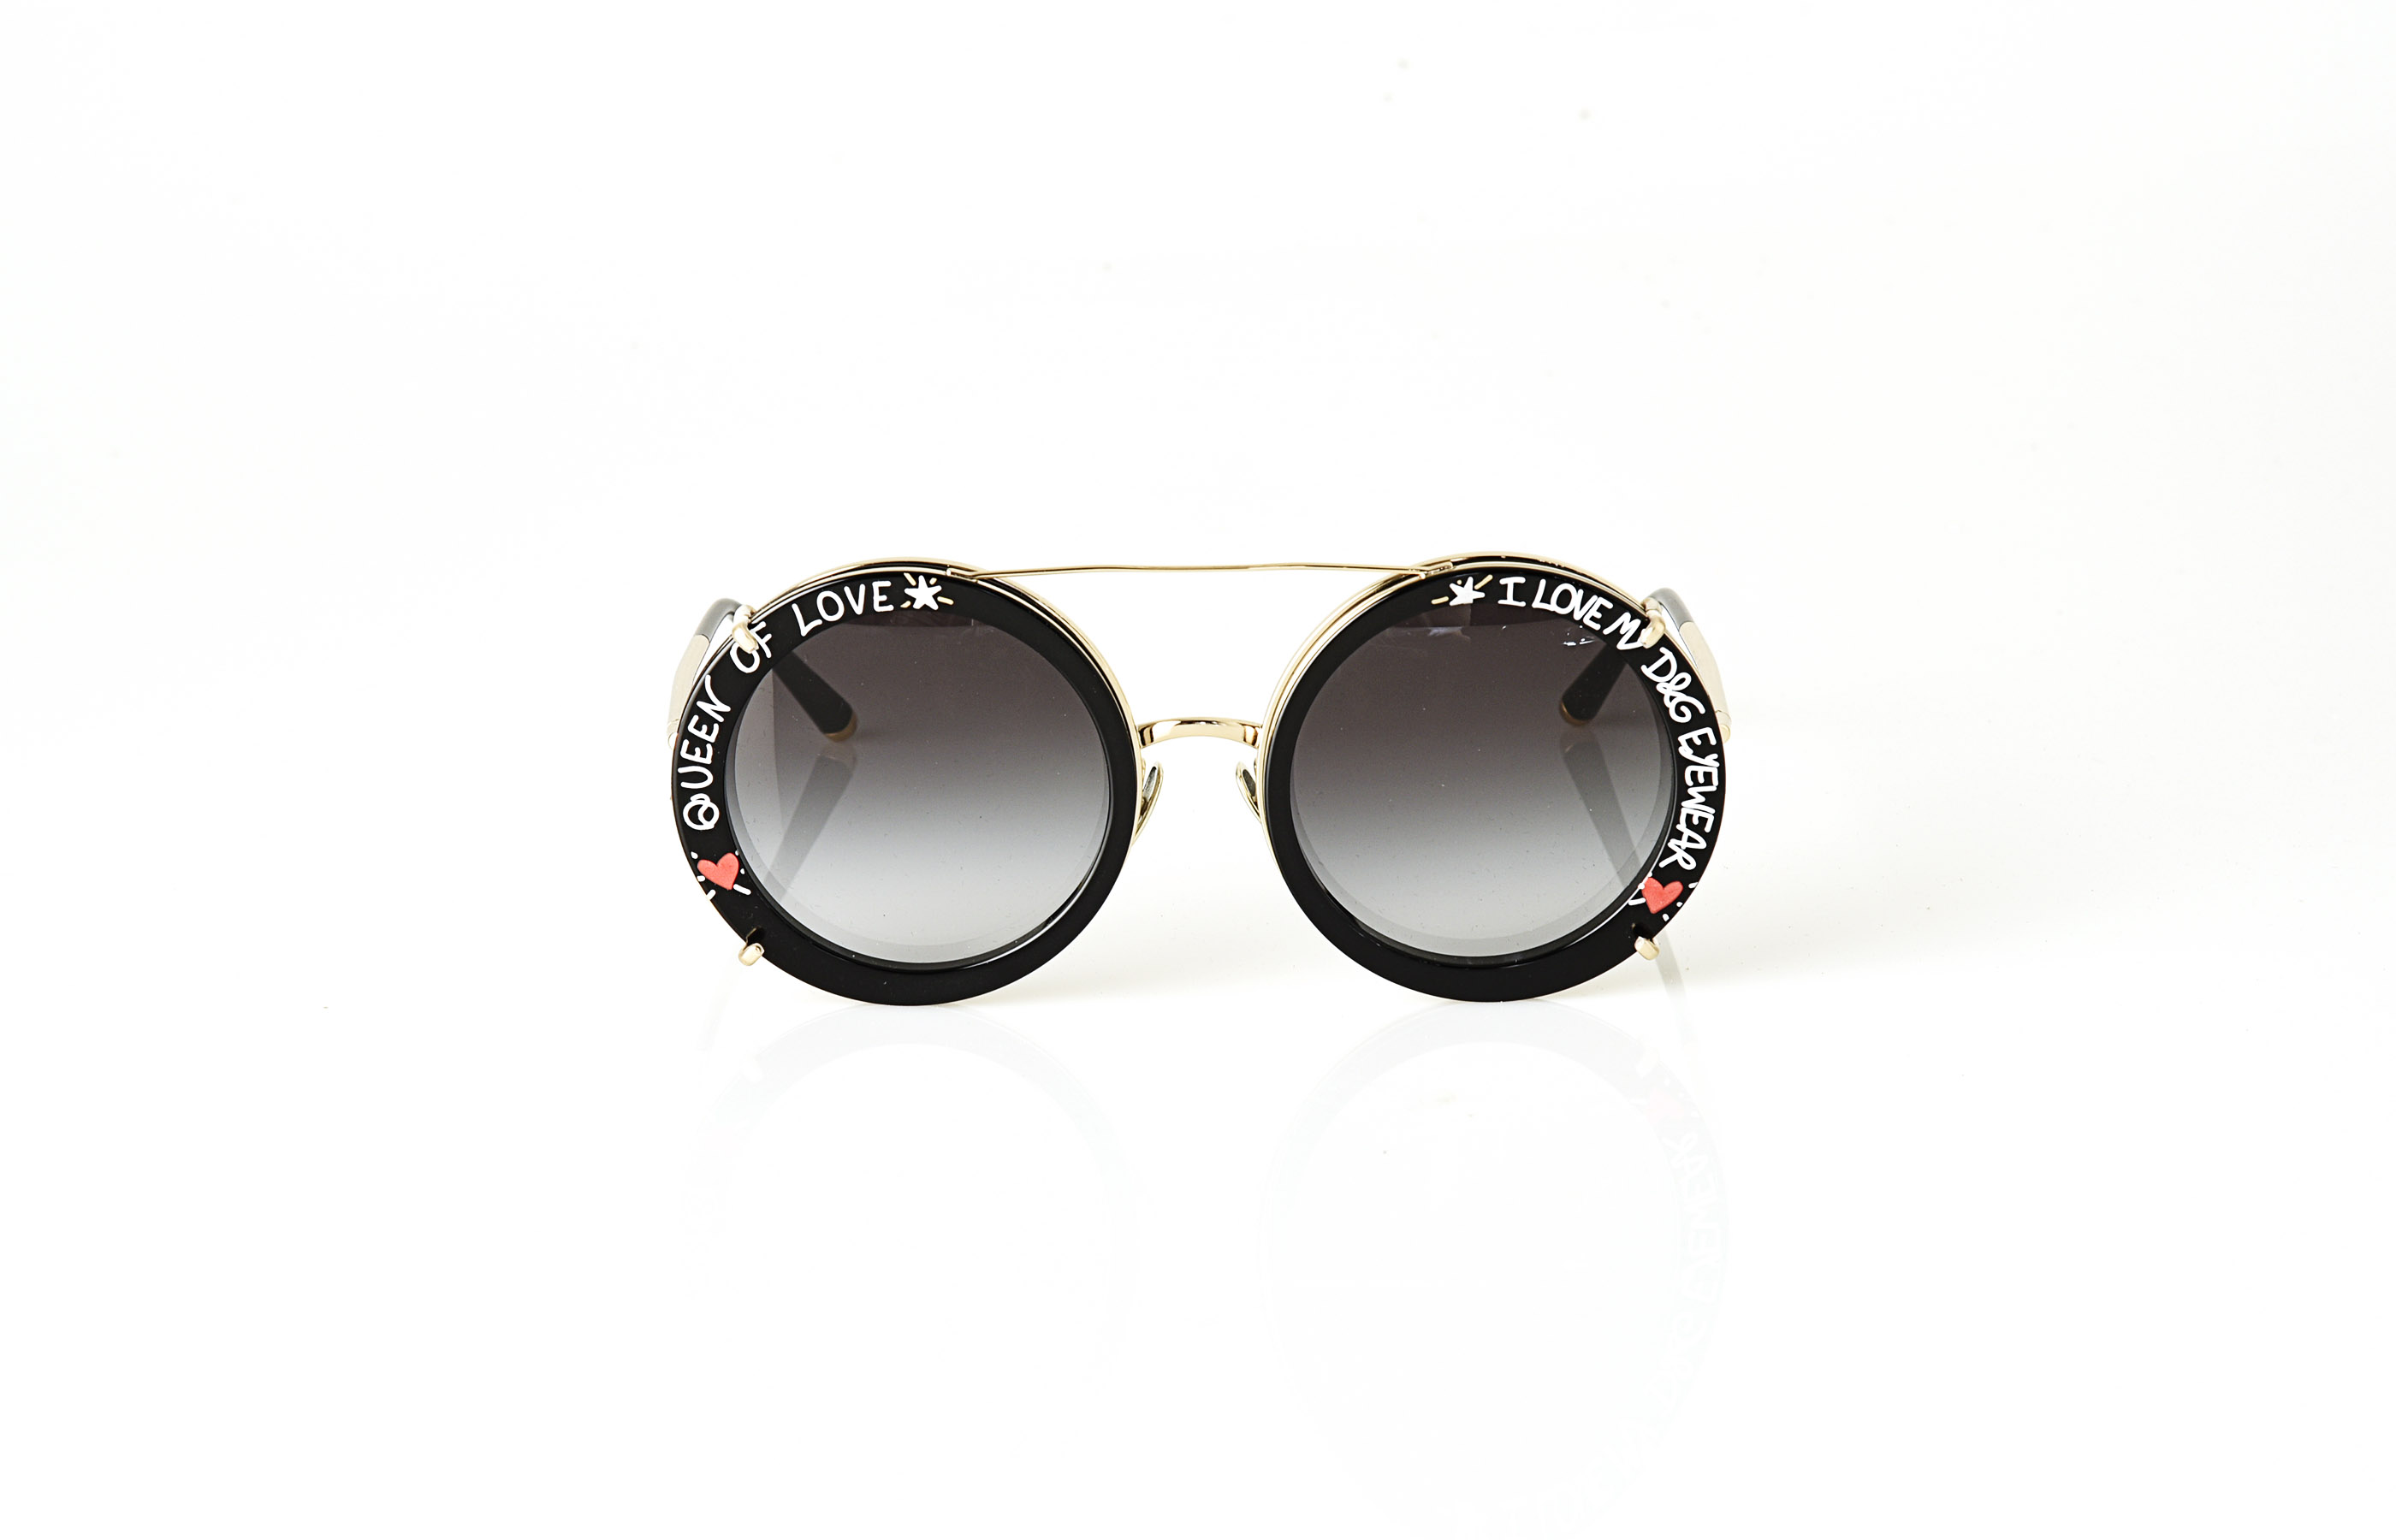 Die Sonnebrille von Dolce & Gabbana aus der Kollektion „Customize Your Eyes“ mit verspieltem Graffiti-Print Clip-on.